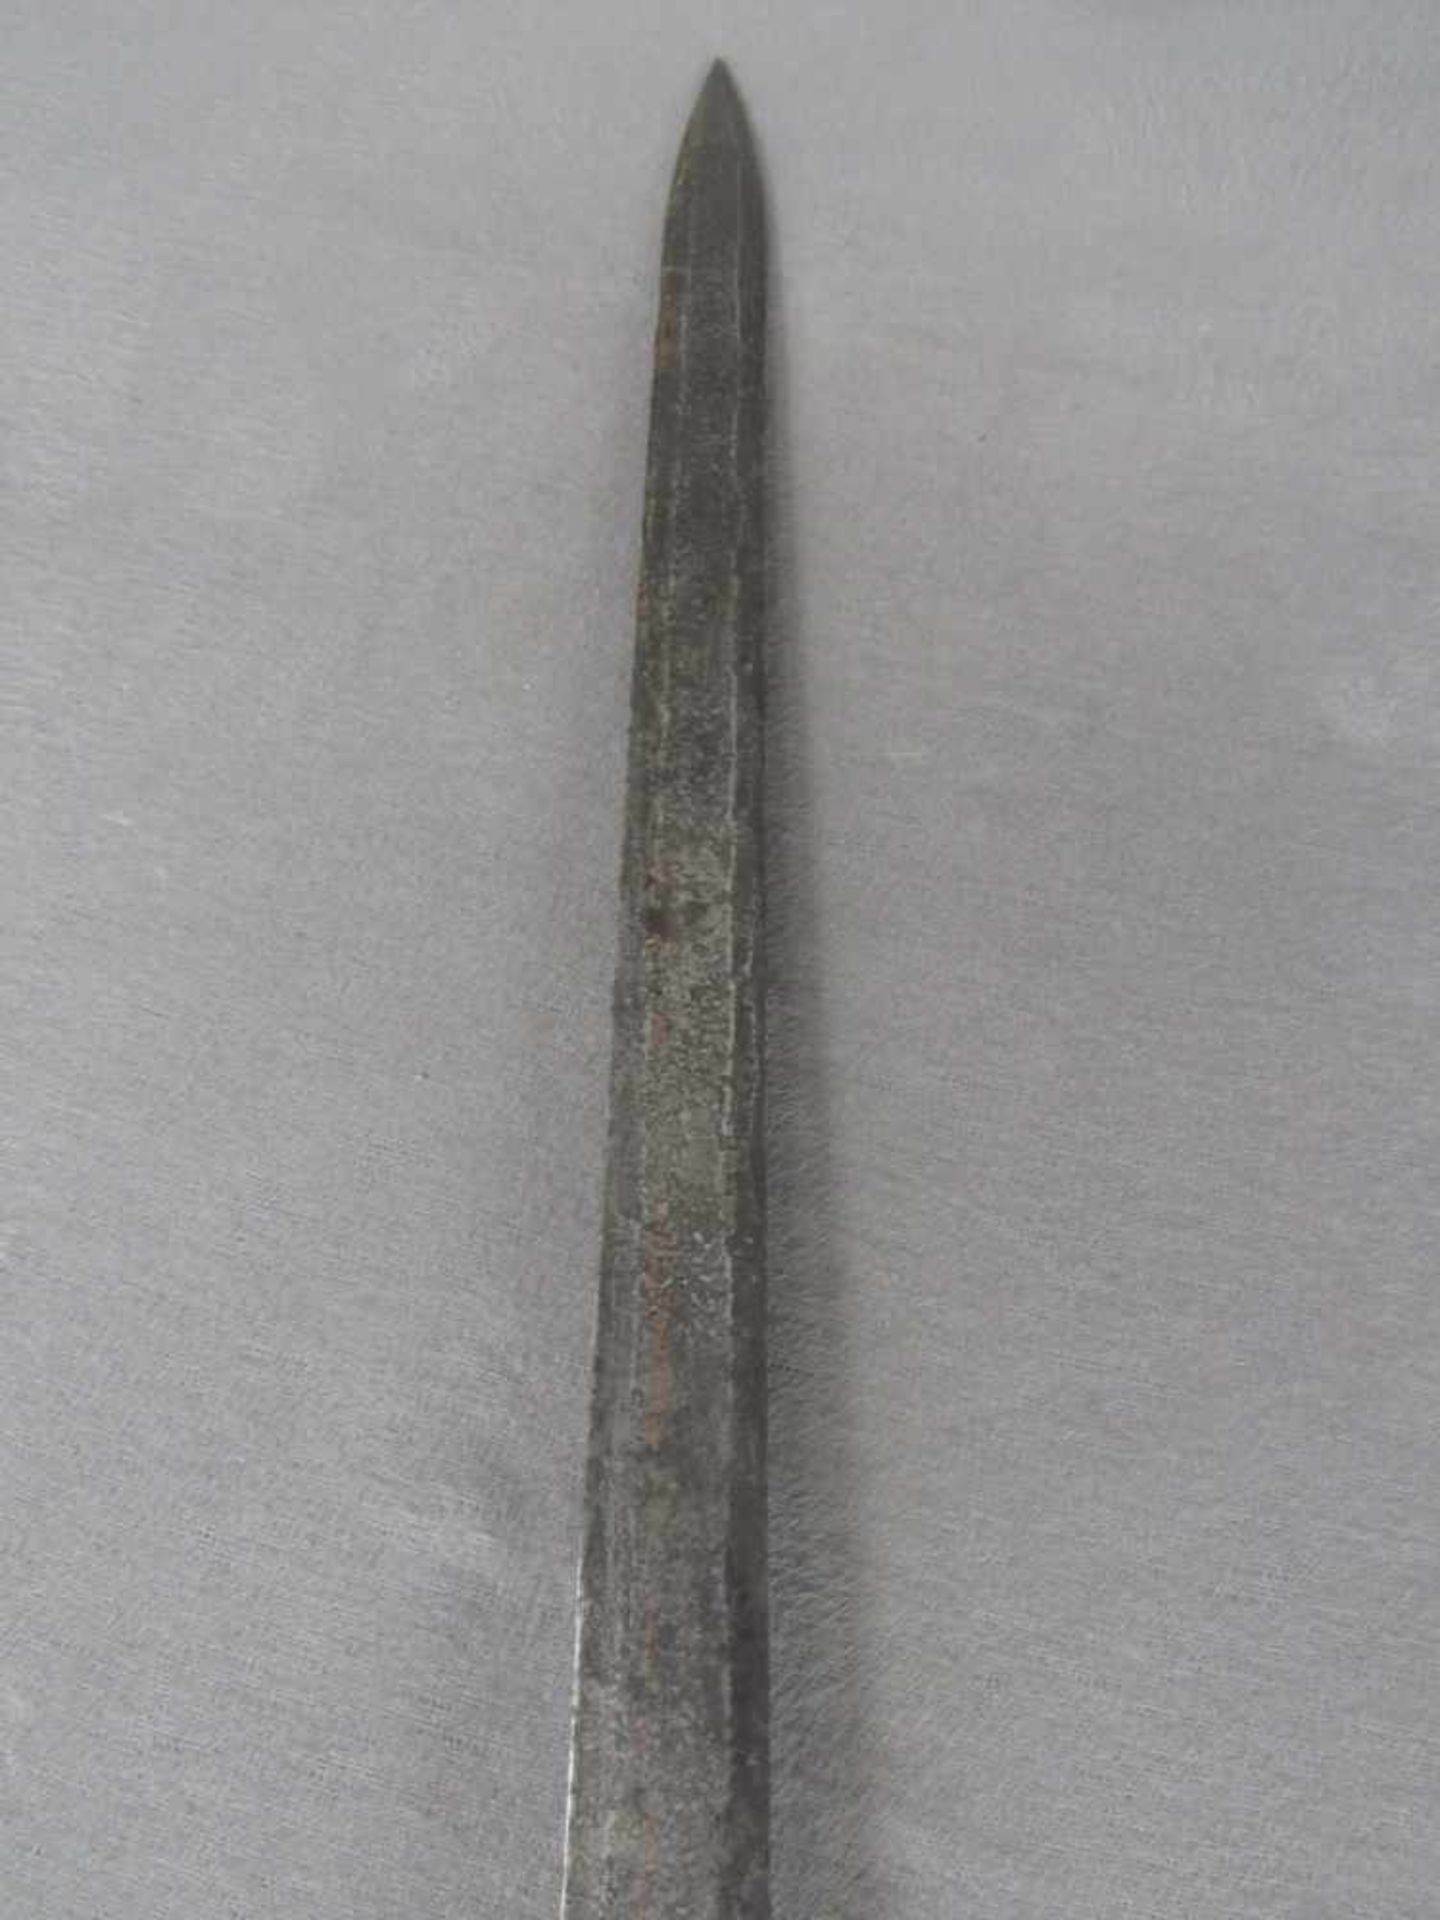 Asiatisches Schwert leicht rostnarbig 73cm lang - Bild 3 aus 5